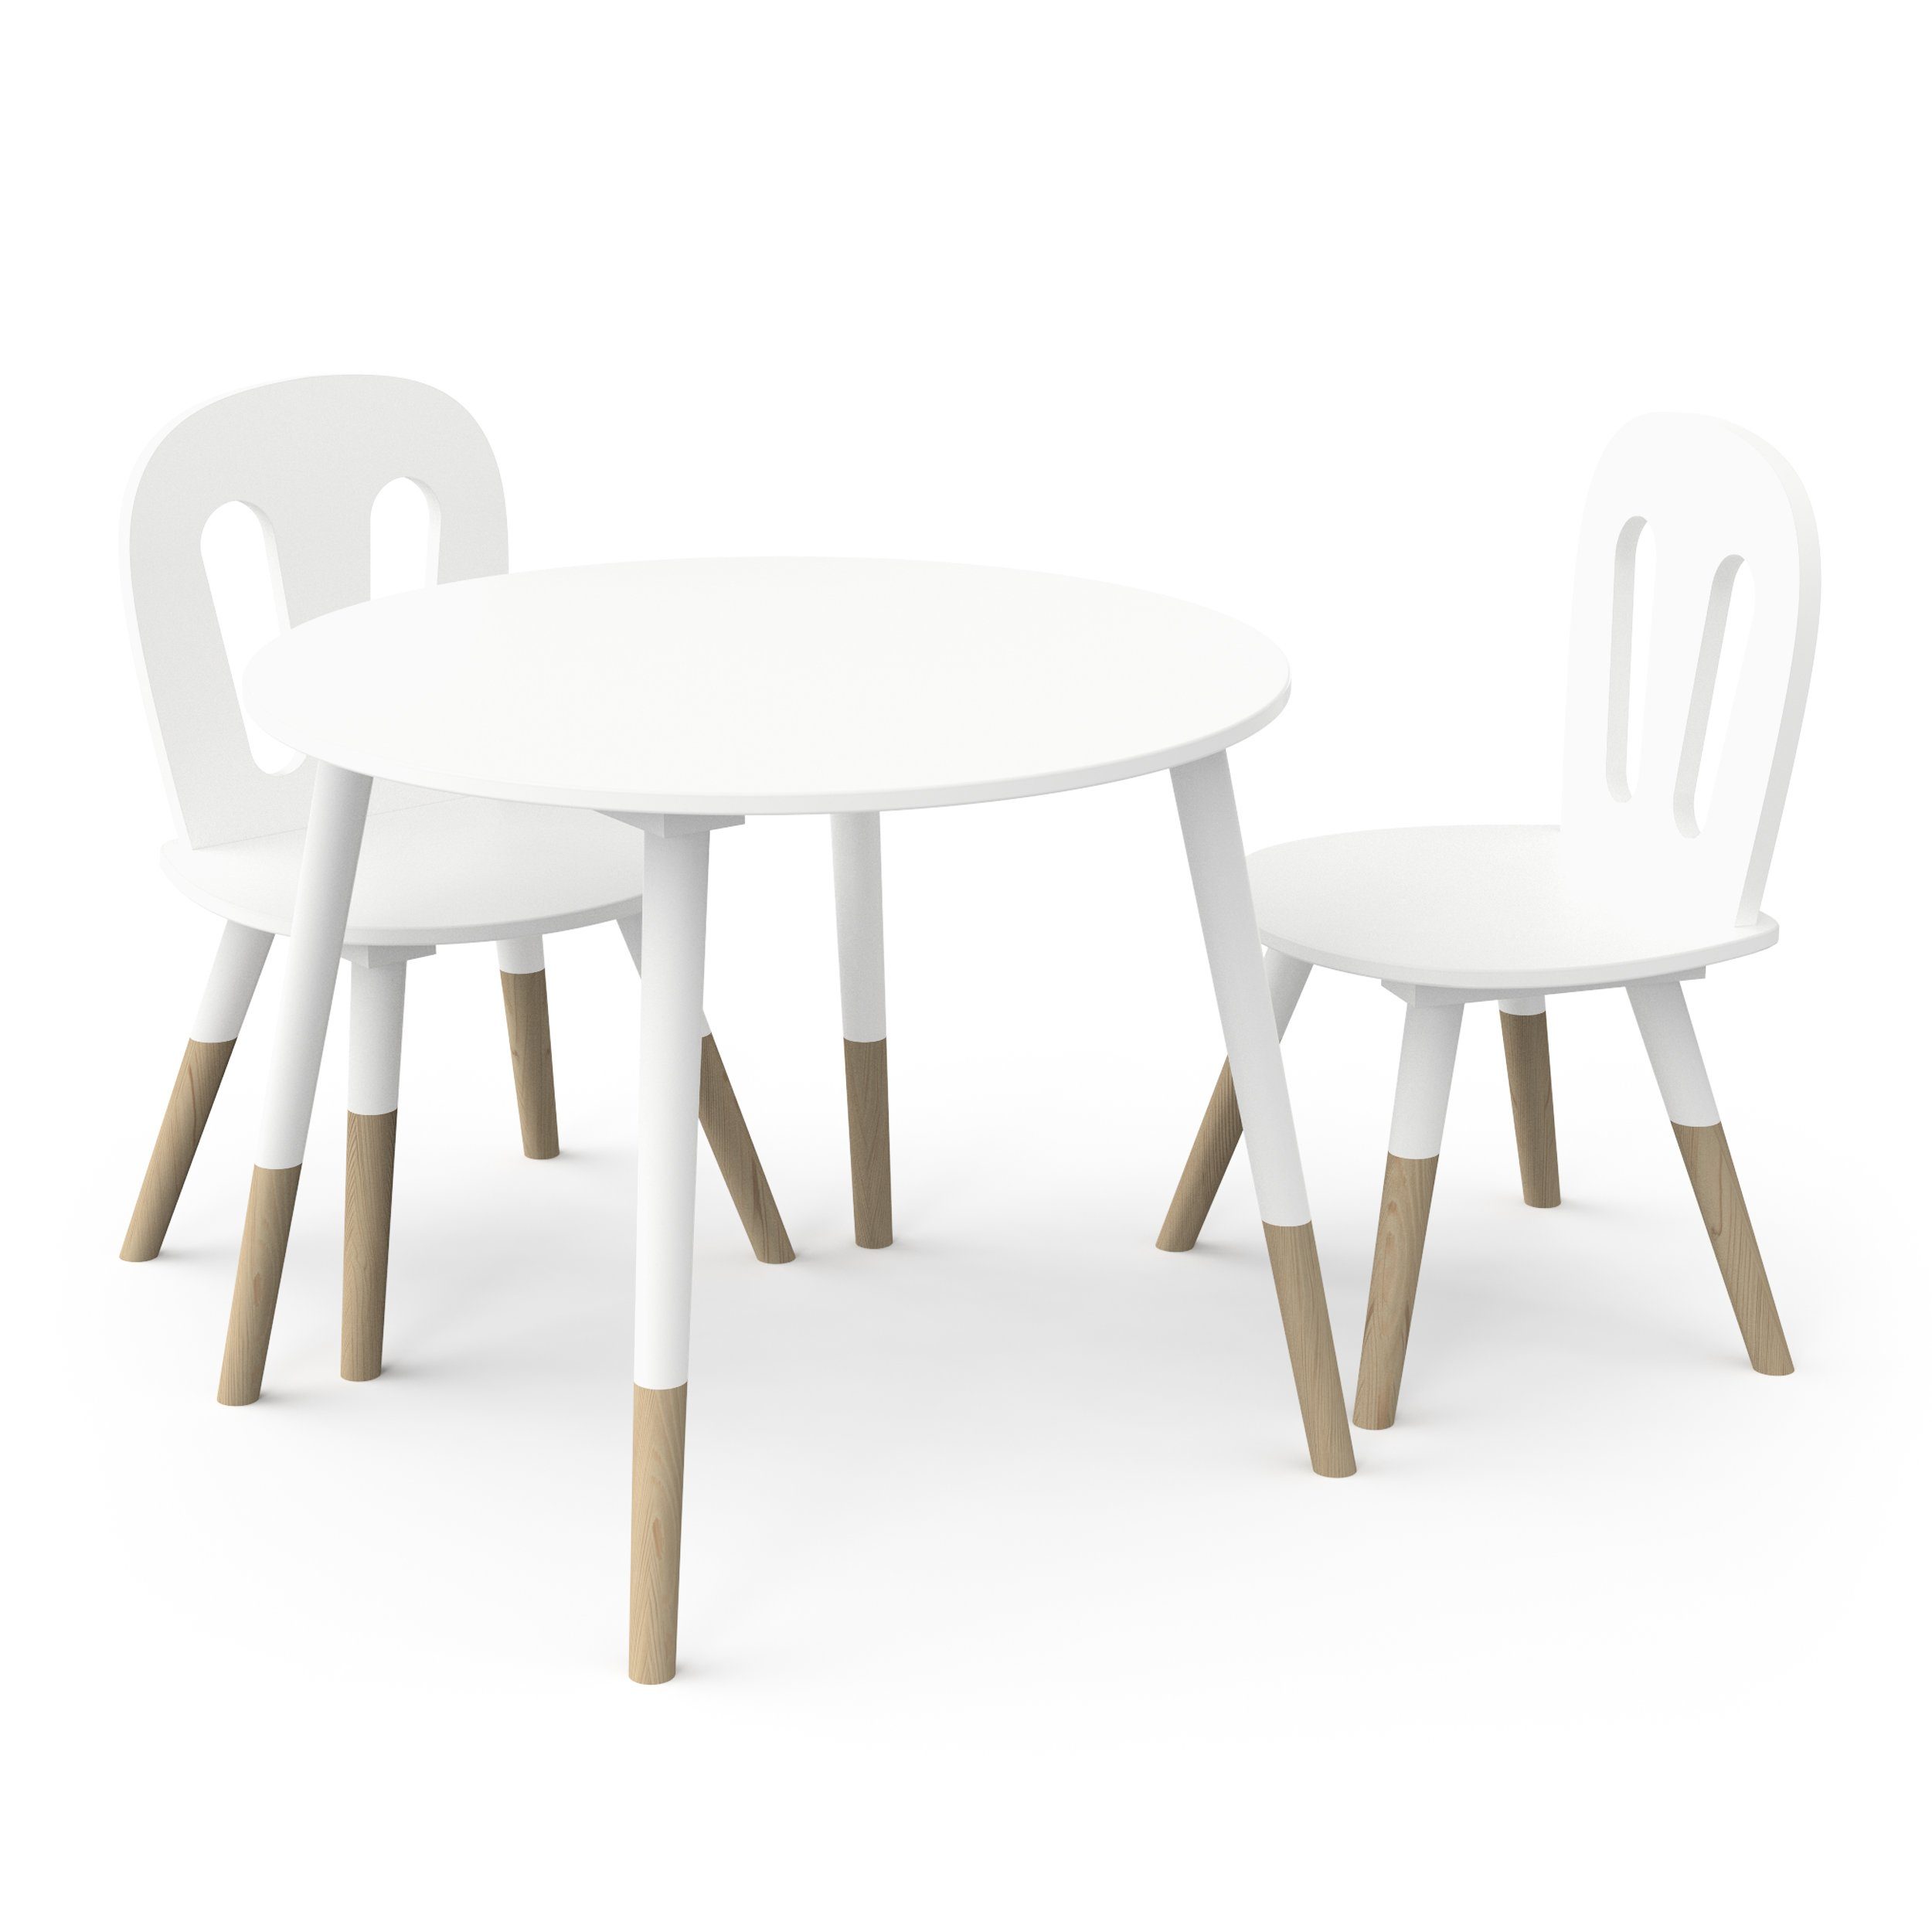 Sitzgarnitur Tisch Sitzhocker weiß gut & weiß/natur Kindertisch (3er-Set), Kinderset 2 habeig Kinder Holz Stühle verarbeitet sehr